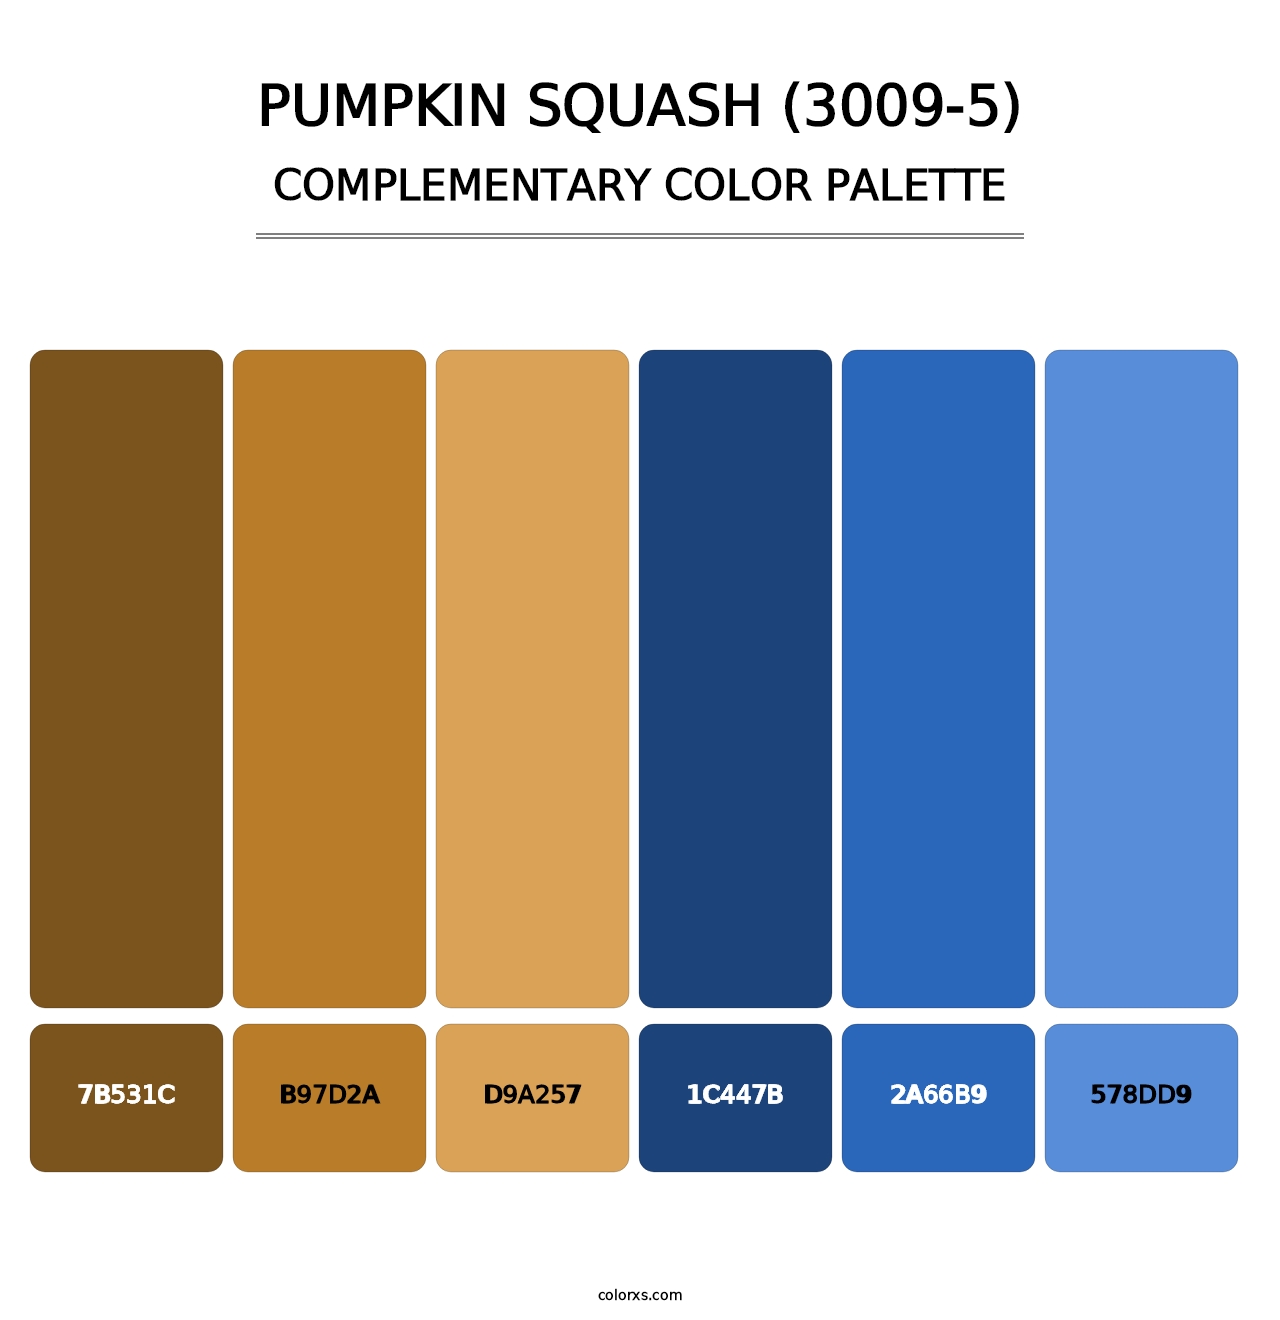 Pumpkin Squash (3009-5) - Complementary Color Palette